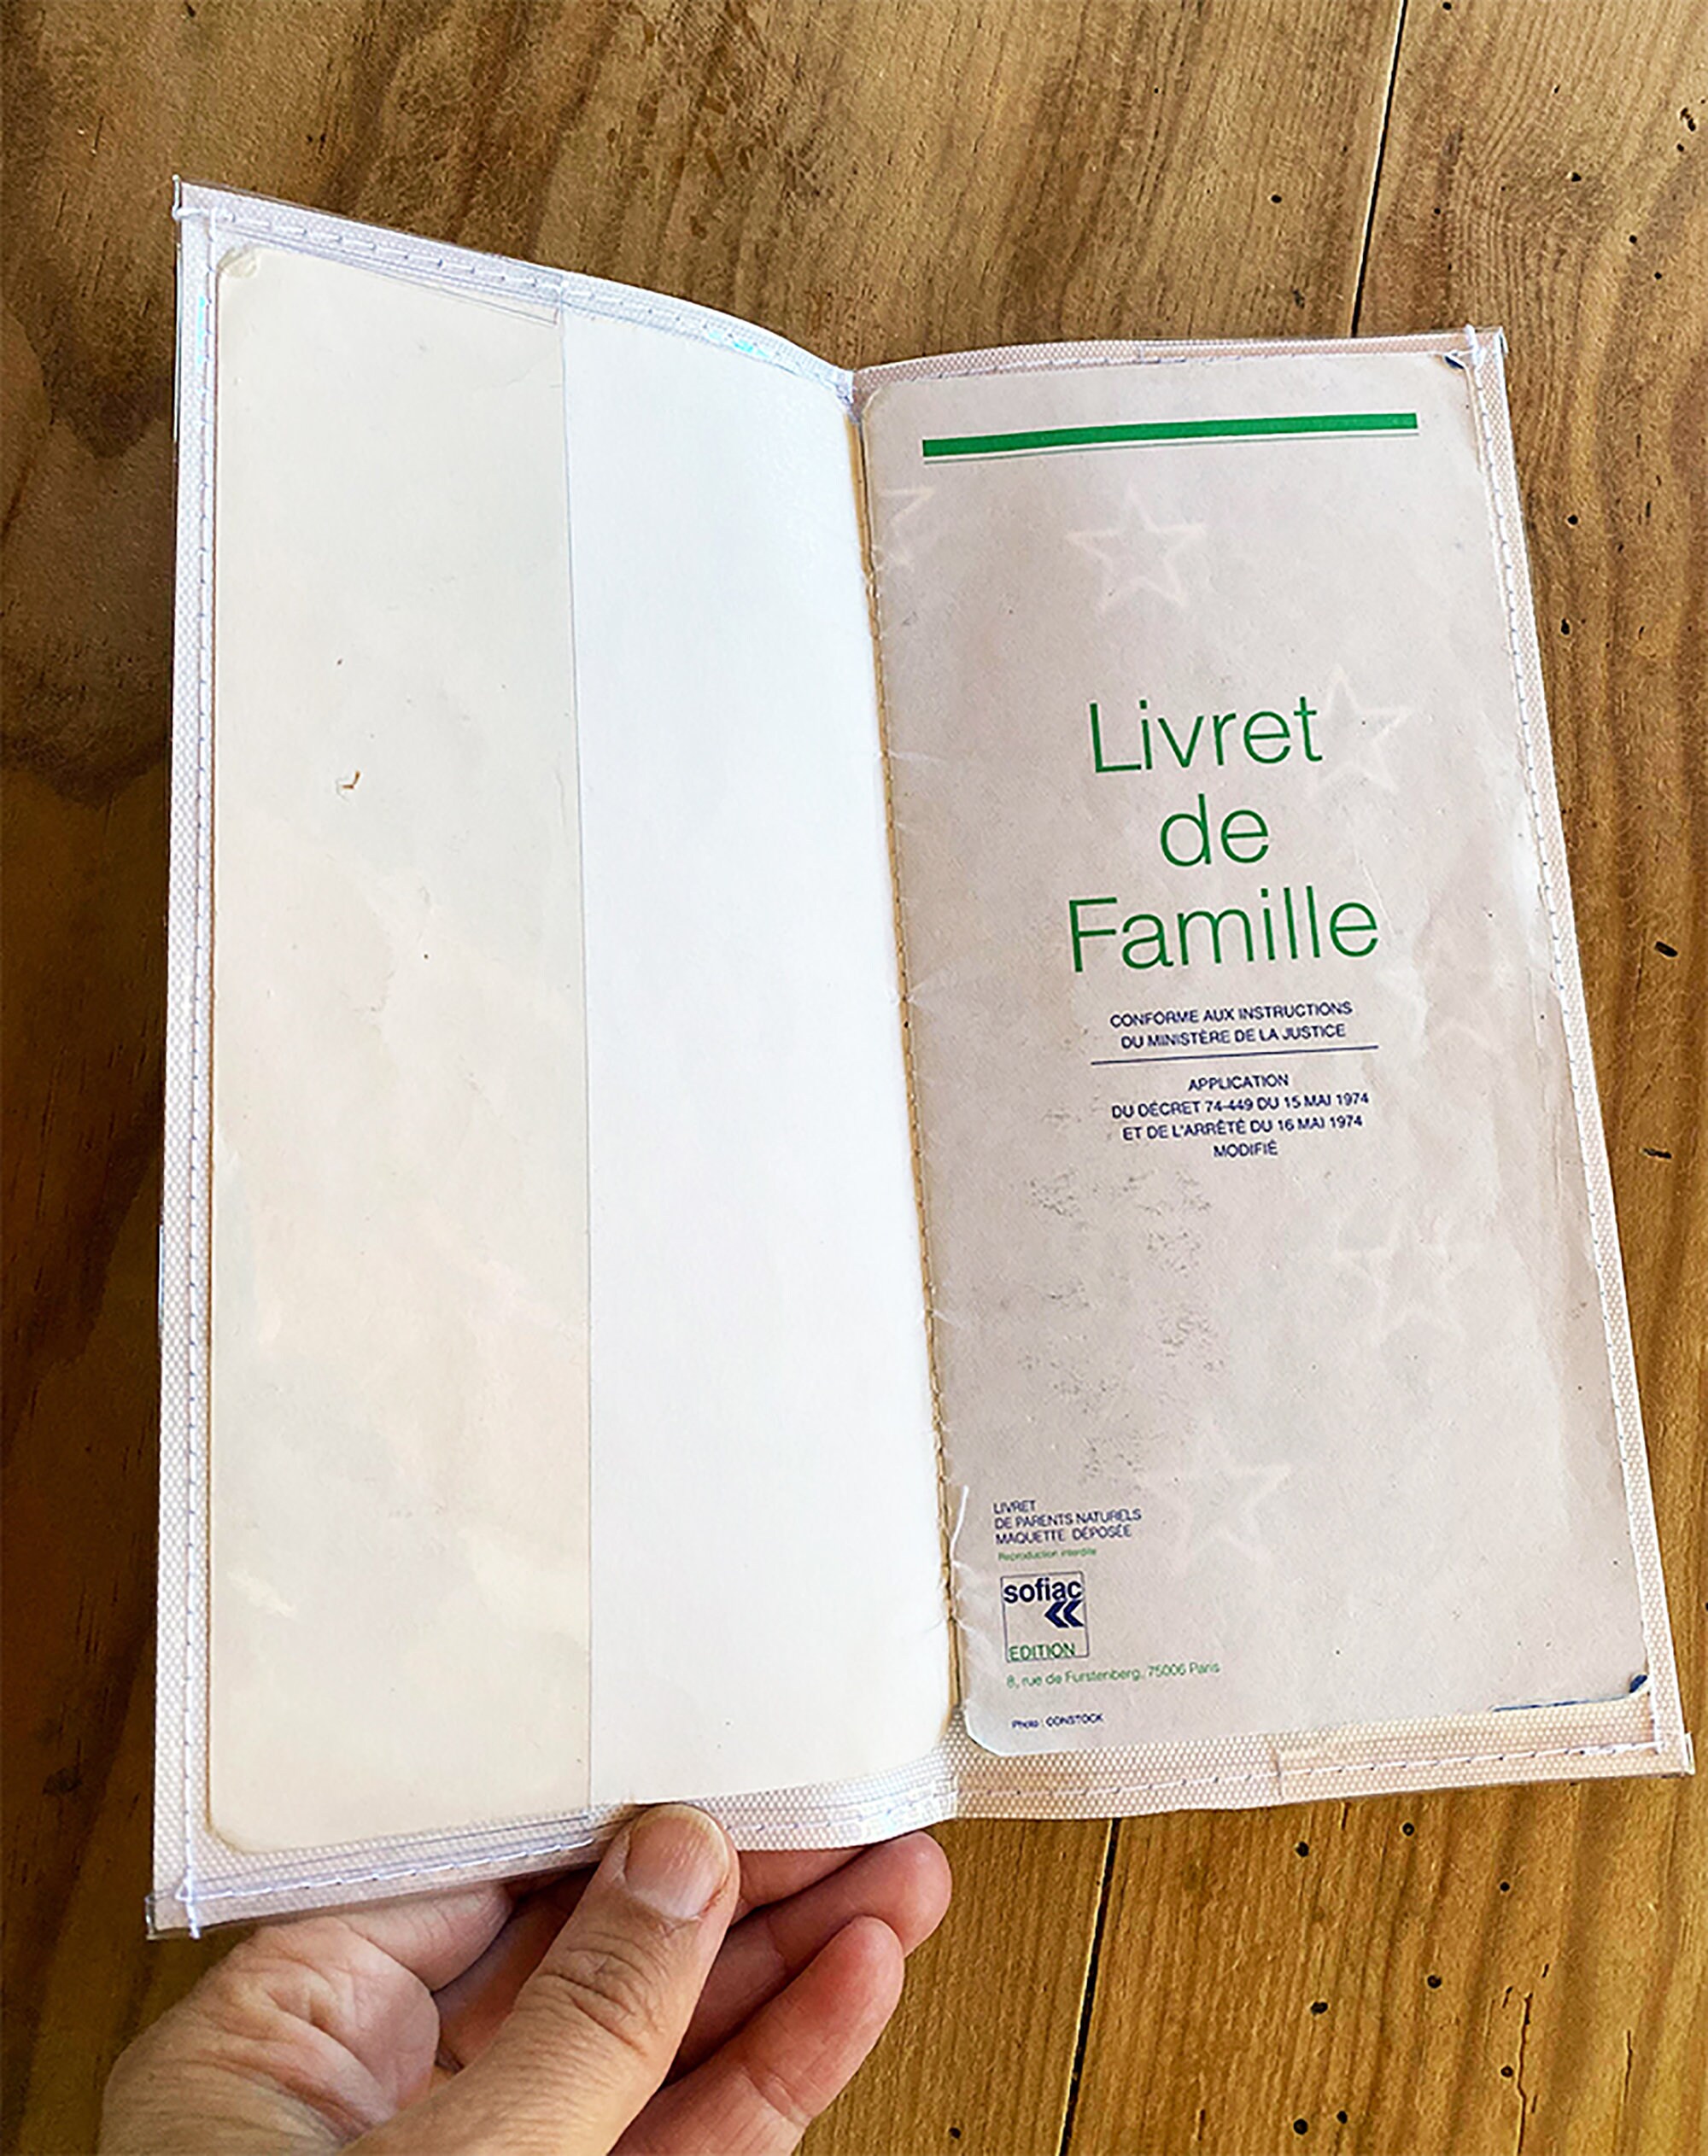 Protège livret de famille personnalisé, étui pochette personnalisé de  protection du livret de famille - photo et texte de votre choix  (P2057-photo)